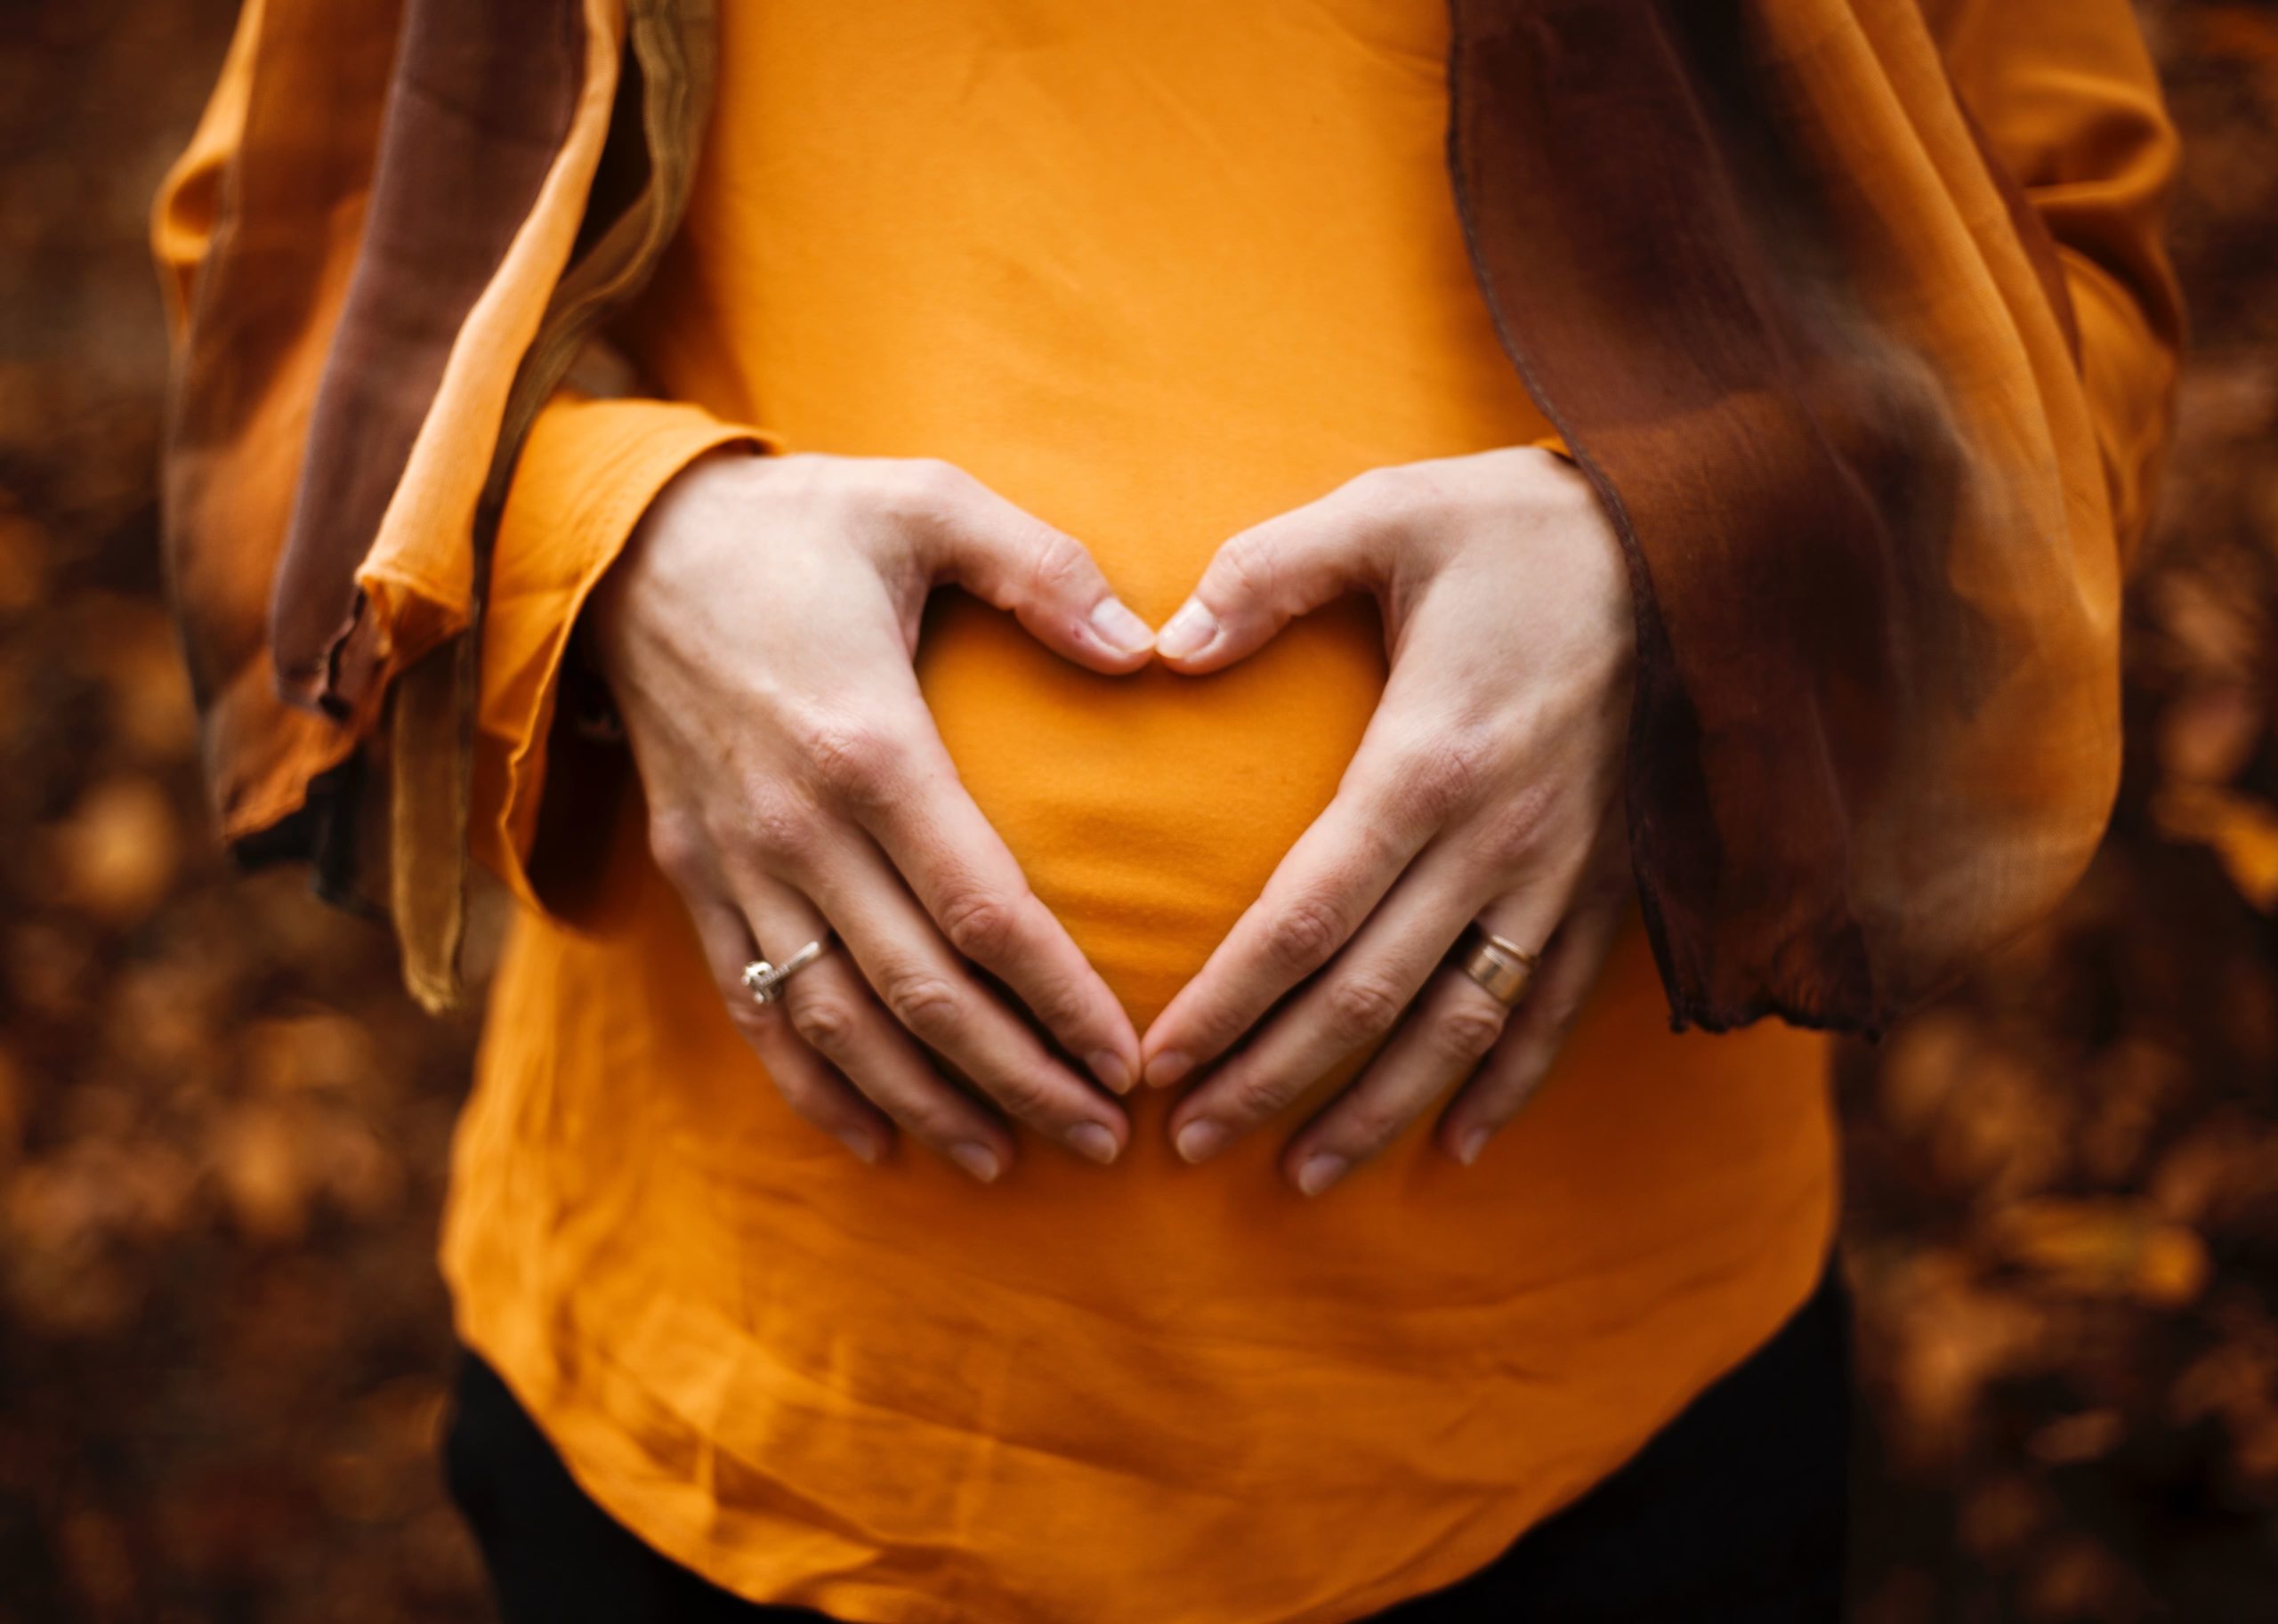 mujer embarazada con sus manos encima de la barriga formando un corazón